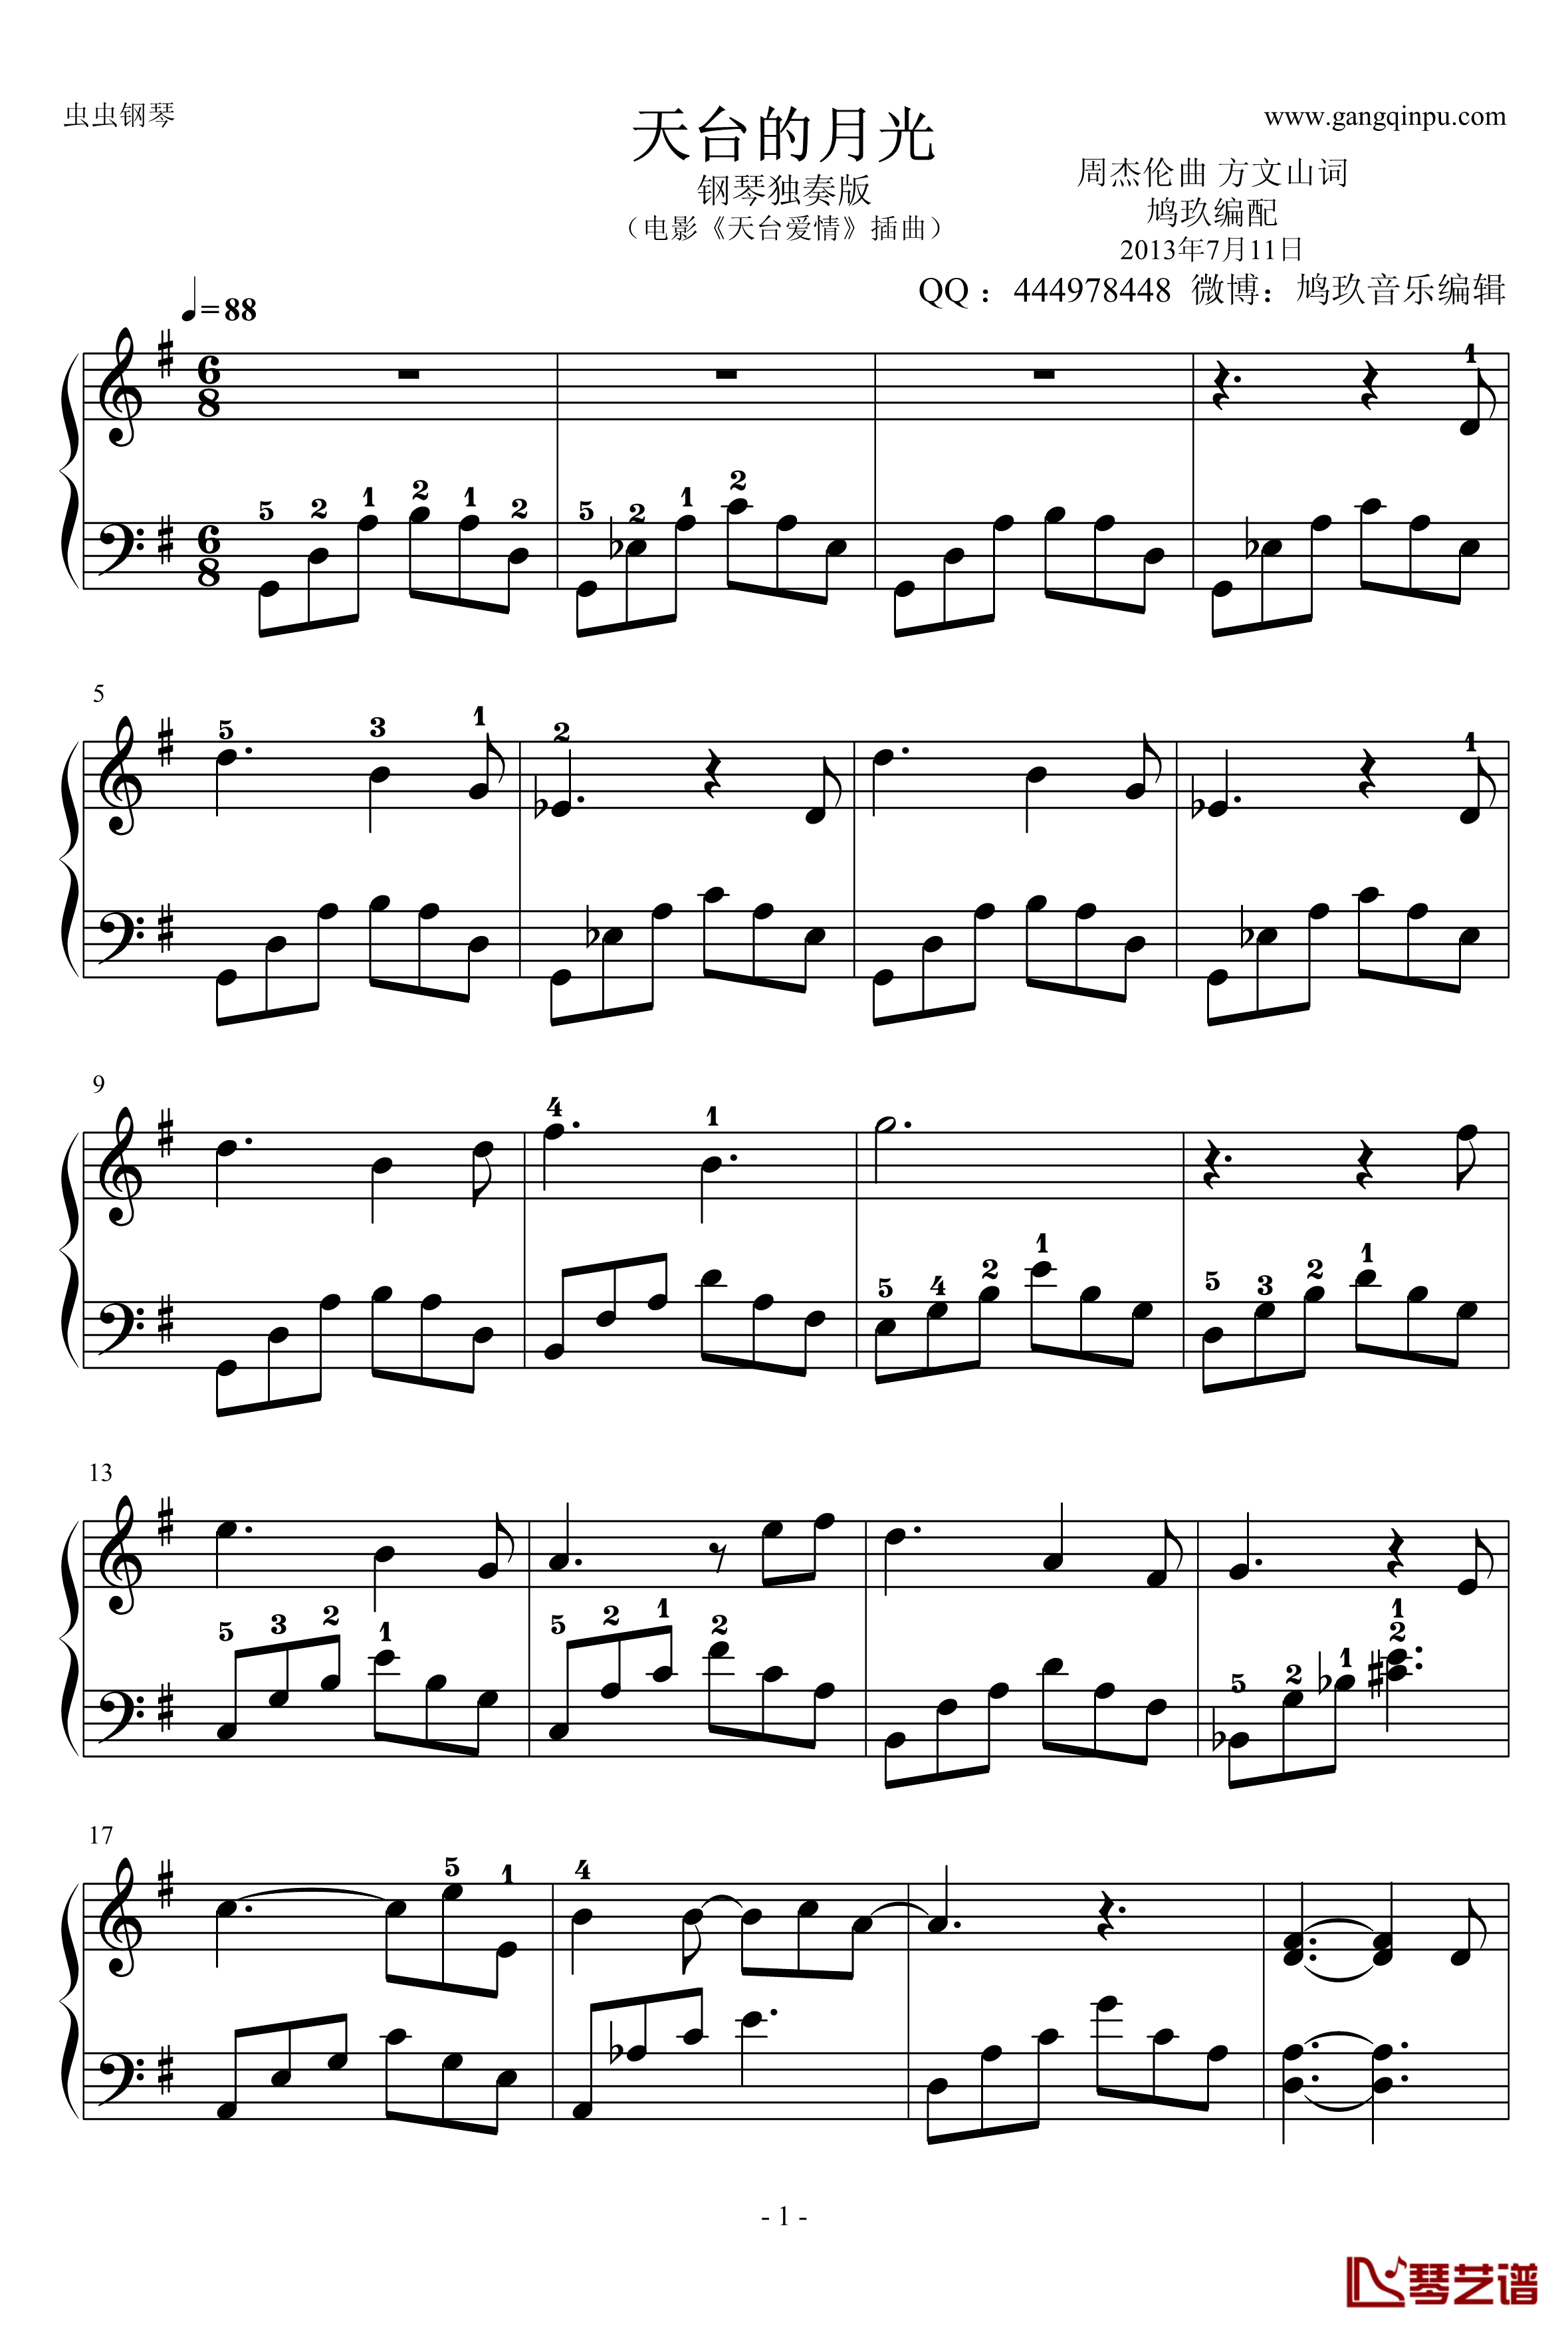 天台的月光钢琴谱-鸠玖独奏版-带指法-周杰伦1